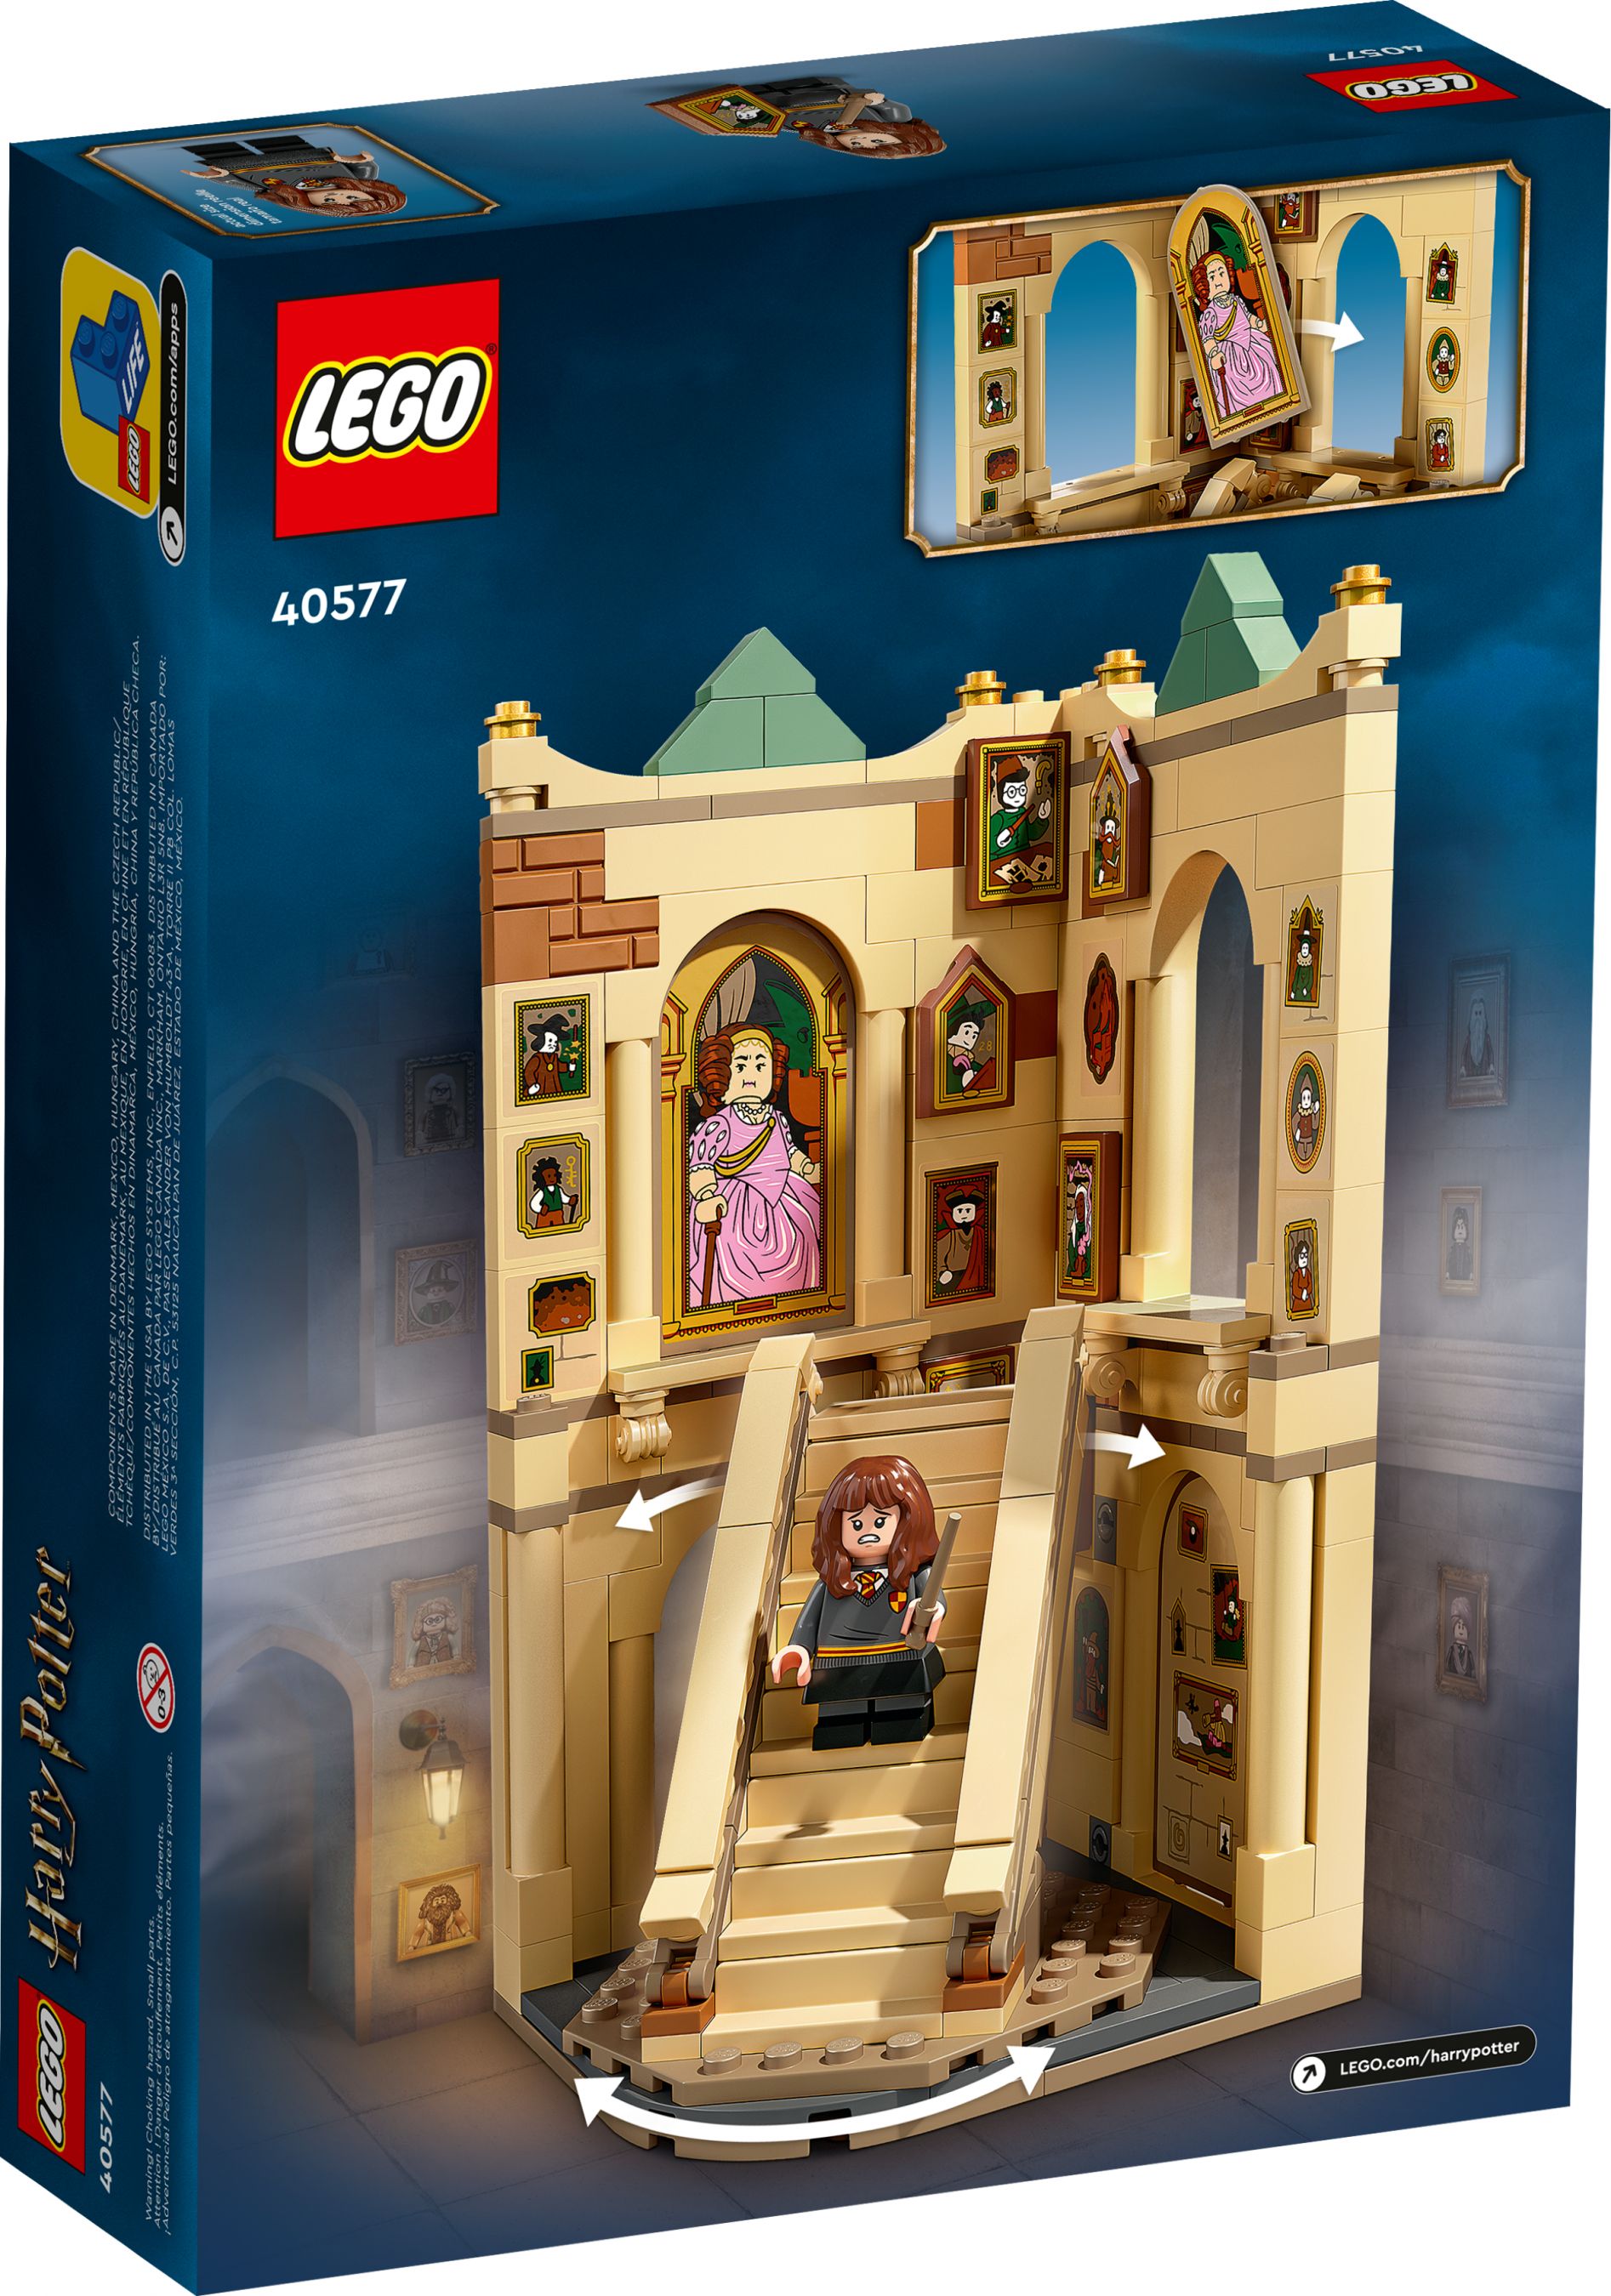 LEGO Promotional 40577 Hogwarts™: Großes Treppenhaus LEGO_40577_alt2.jpg